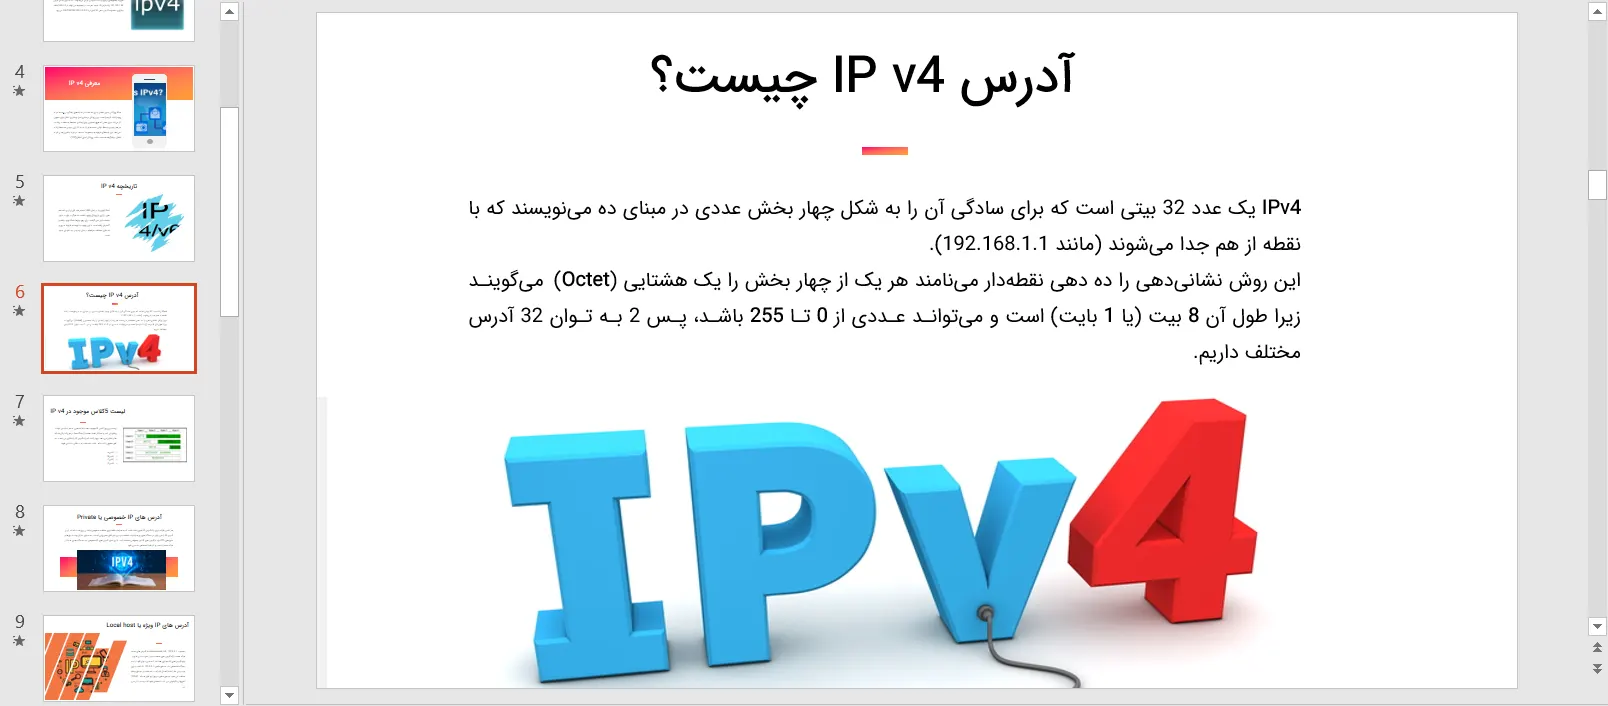 پاورپوینت معرفی IP v4